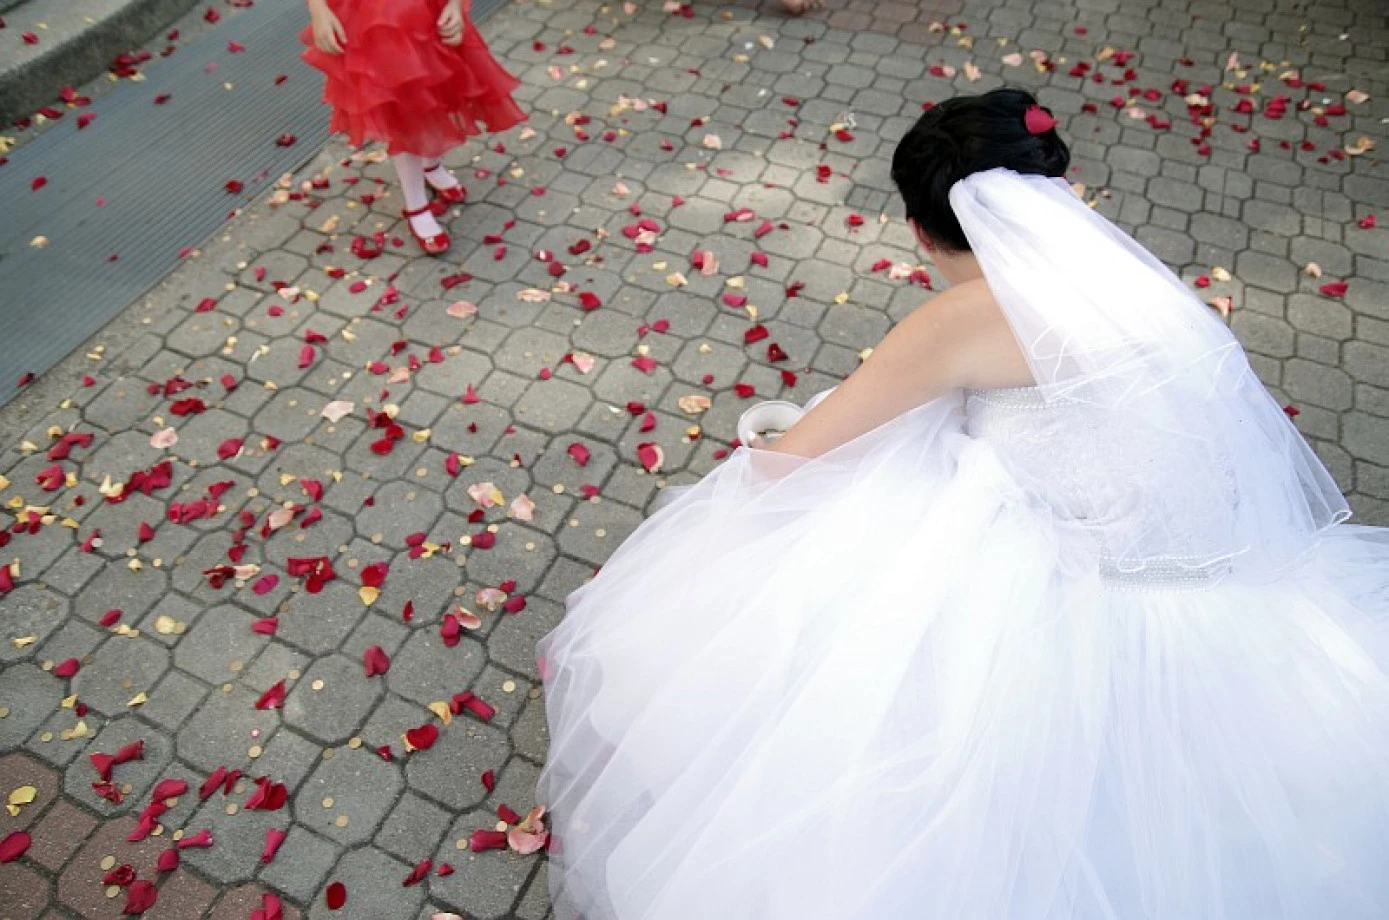 zdjęcia bydgoszcz fotograf foto-wideo-klip portfolio zdjecia slubne inspiracje wesele plener slubny sesja slubna